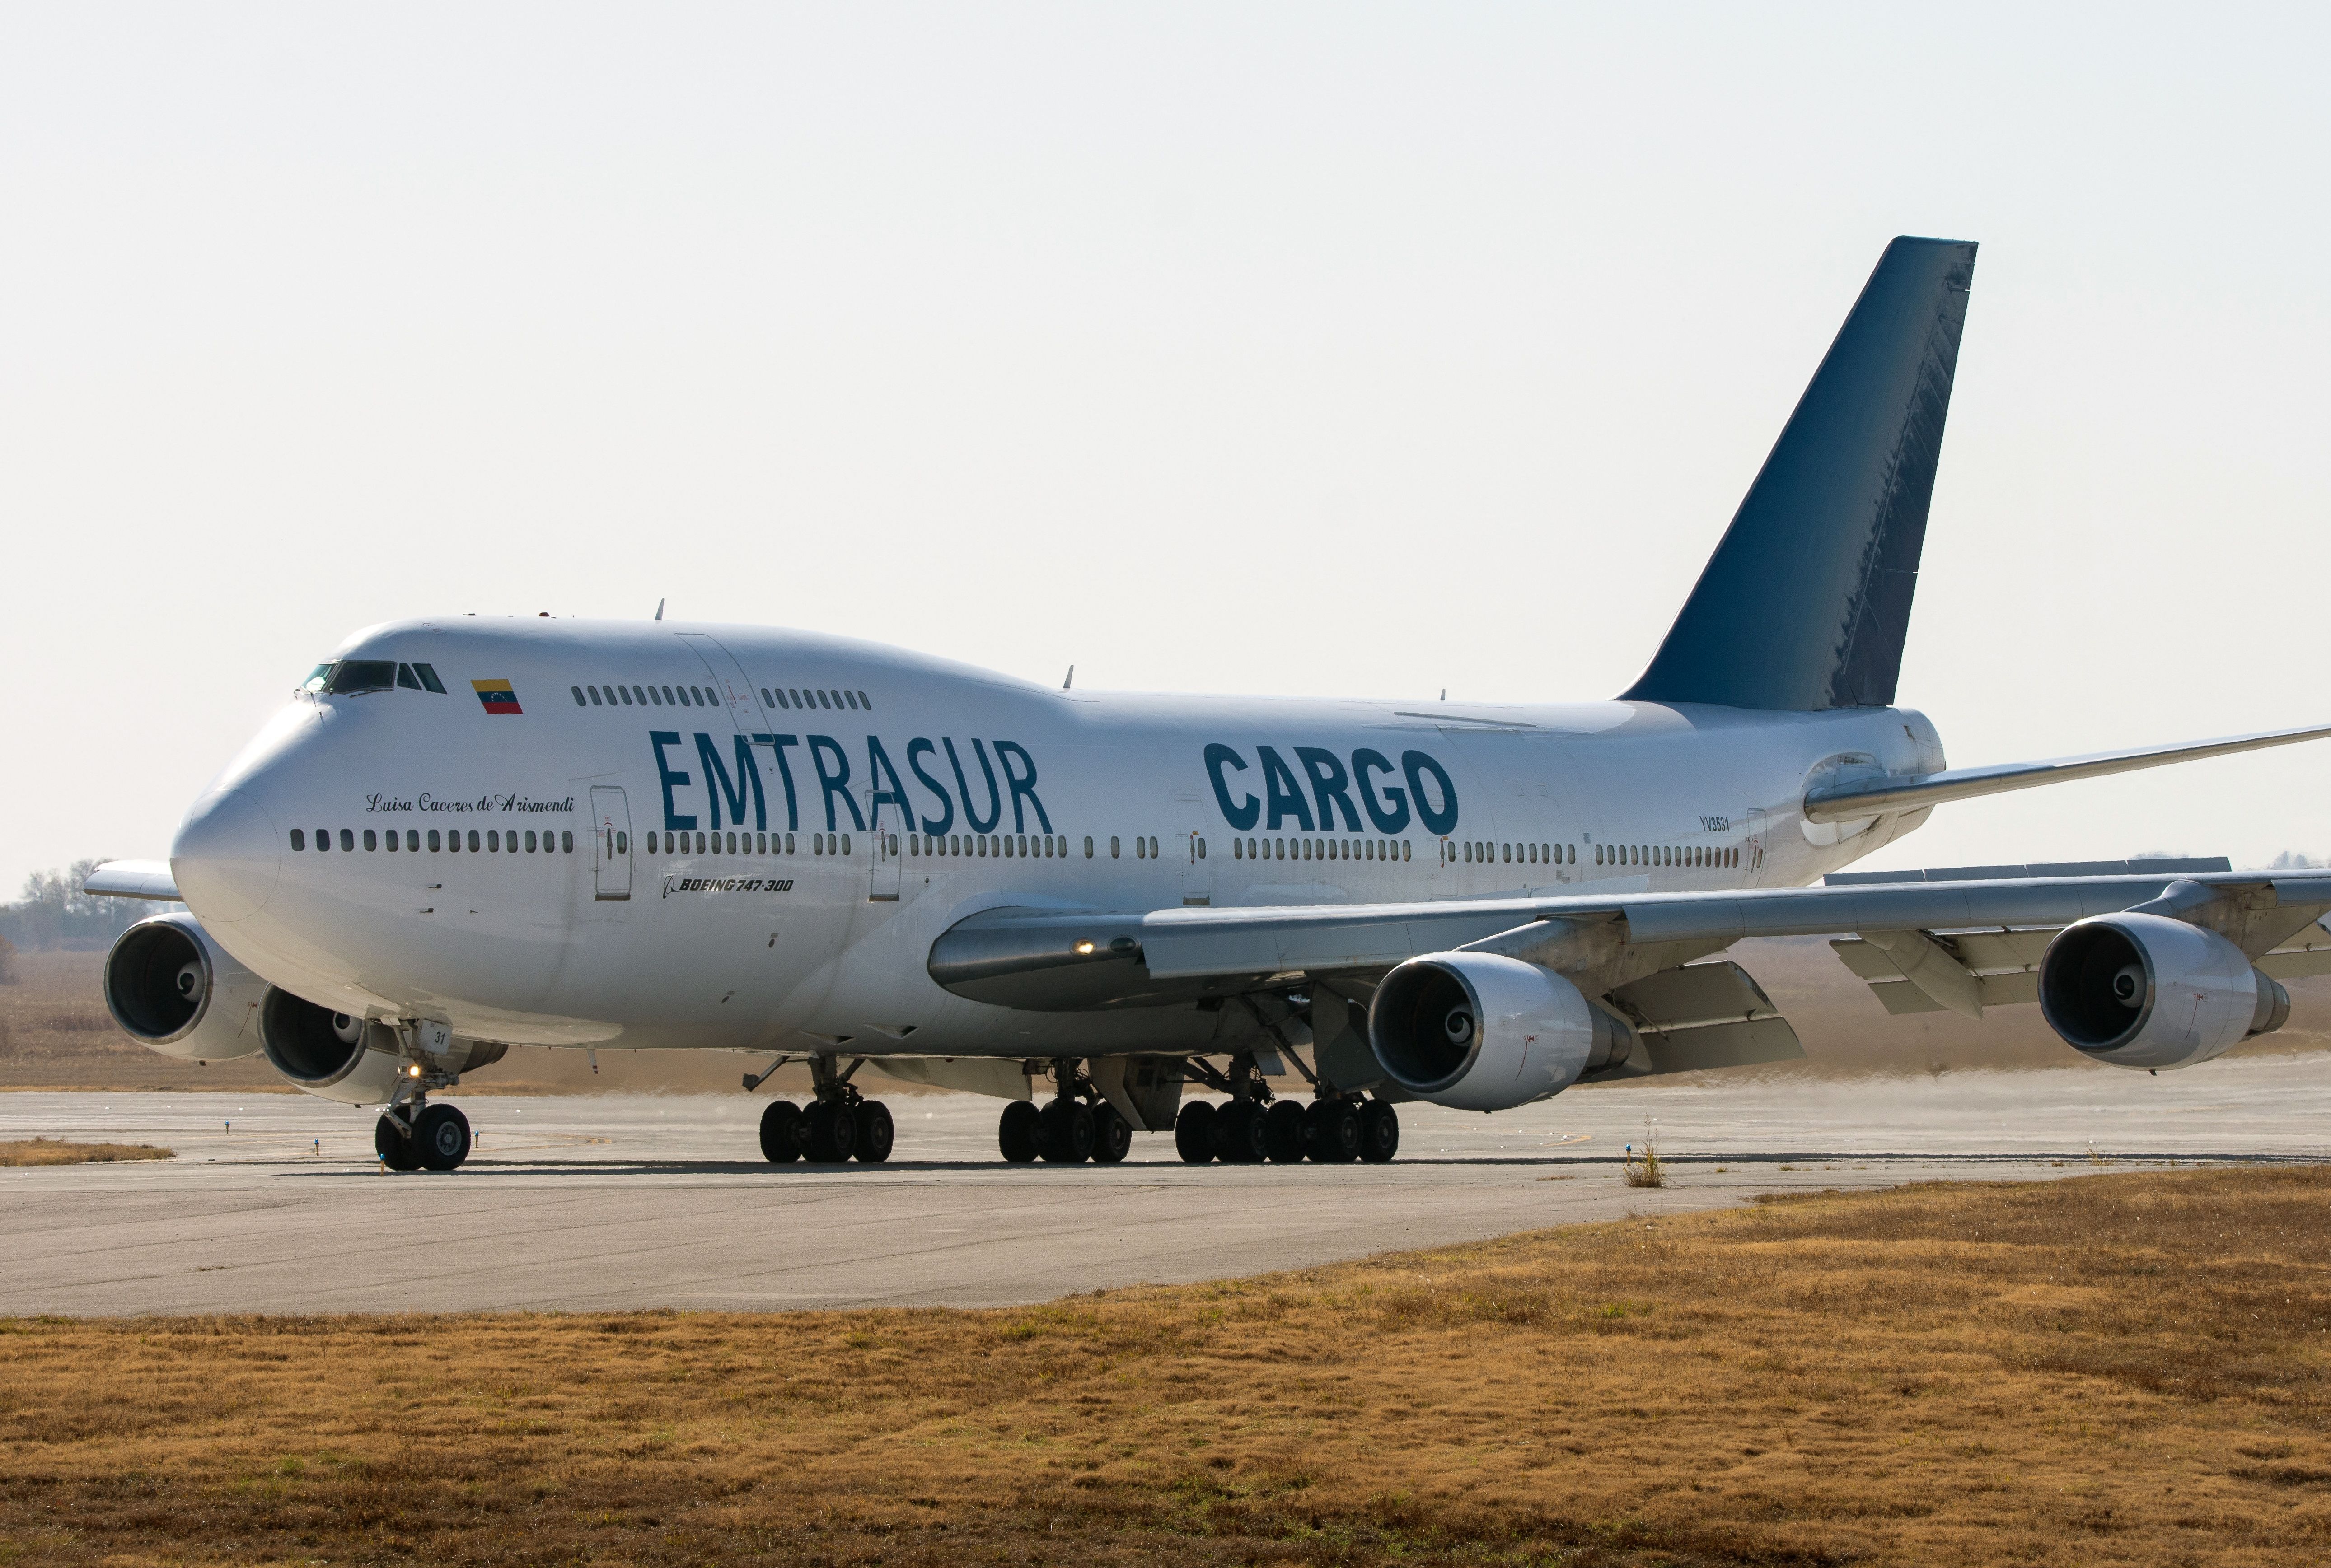 Emtrasur's Boeing 747-300M